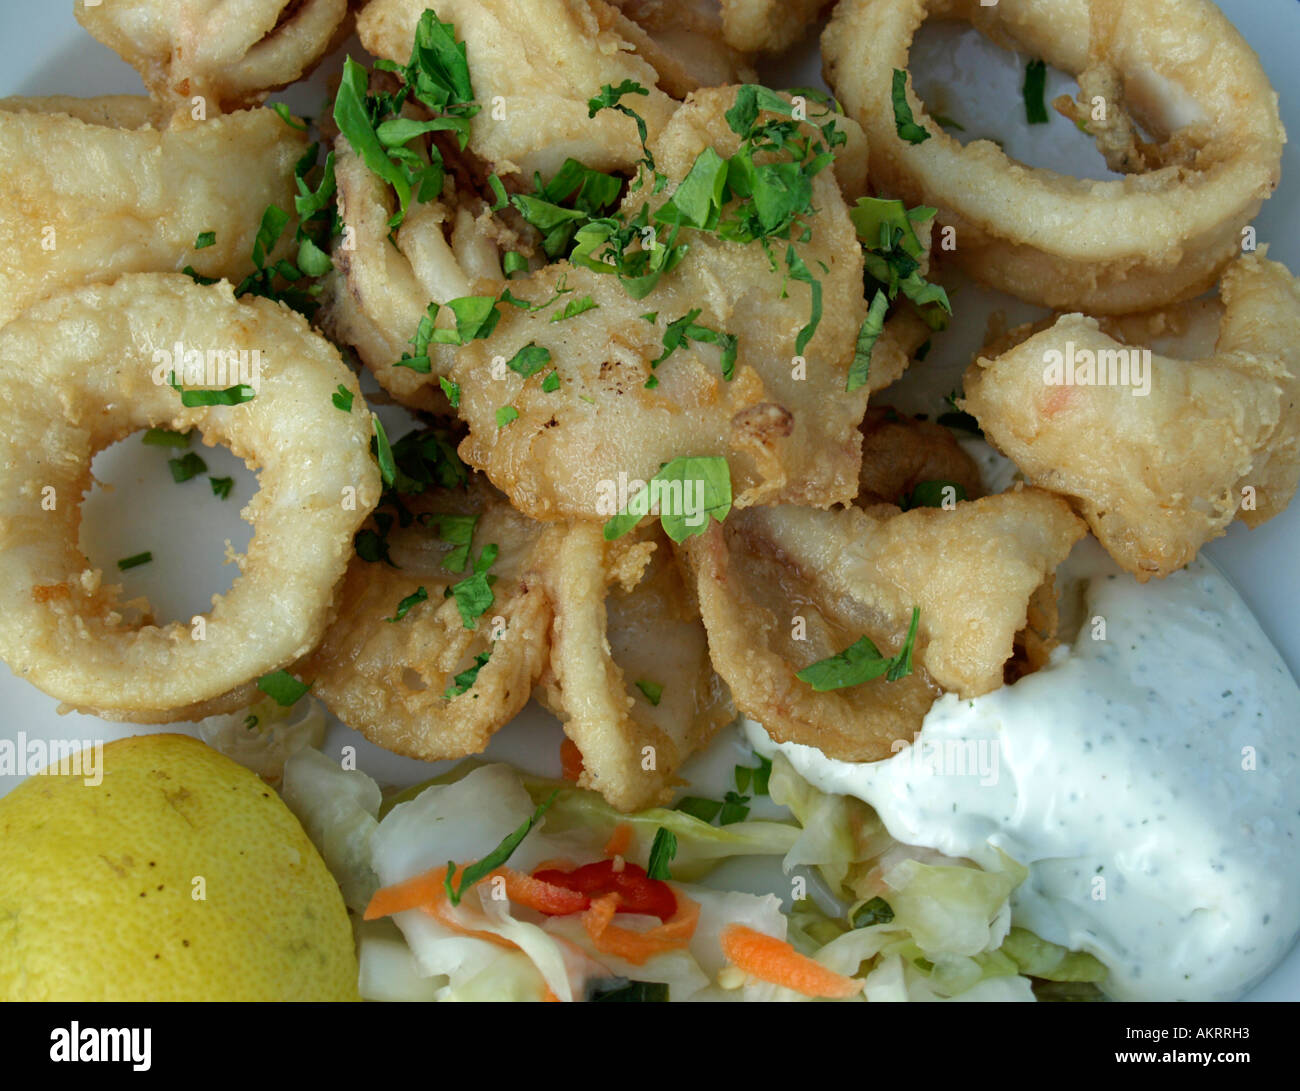 Placa con tsatziki cuttlefisch Kalamari fritos y limón Foto de stock